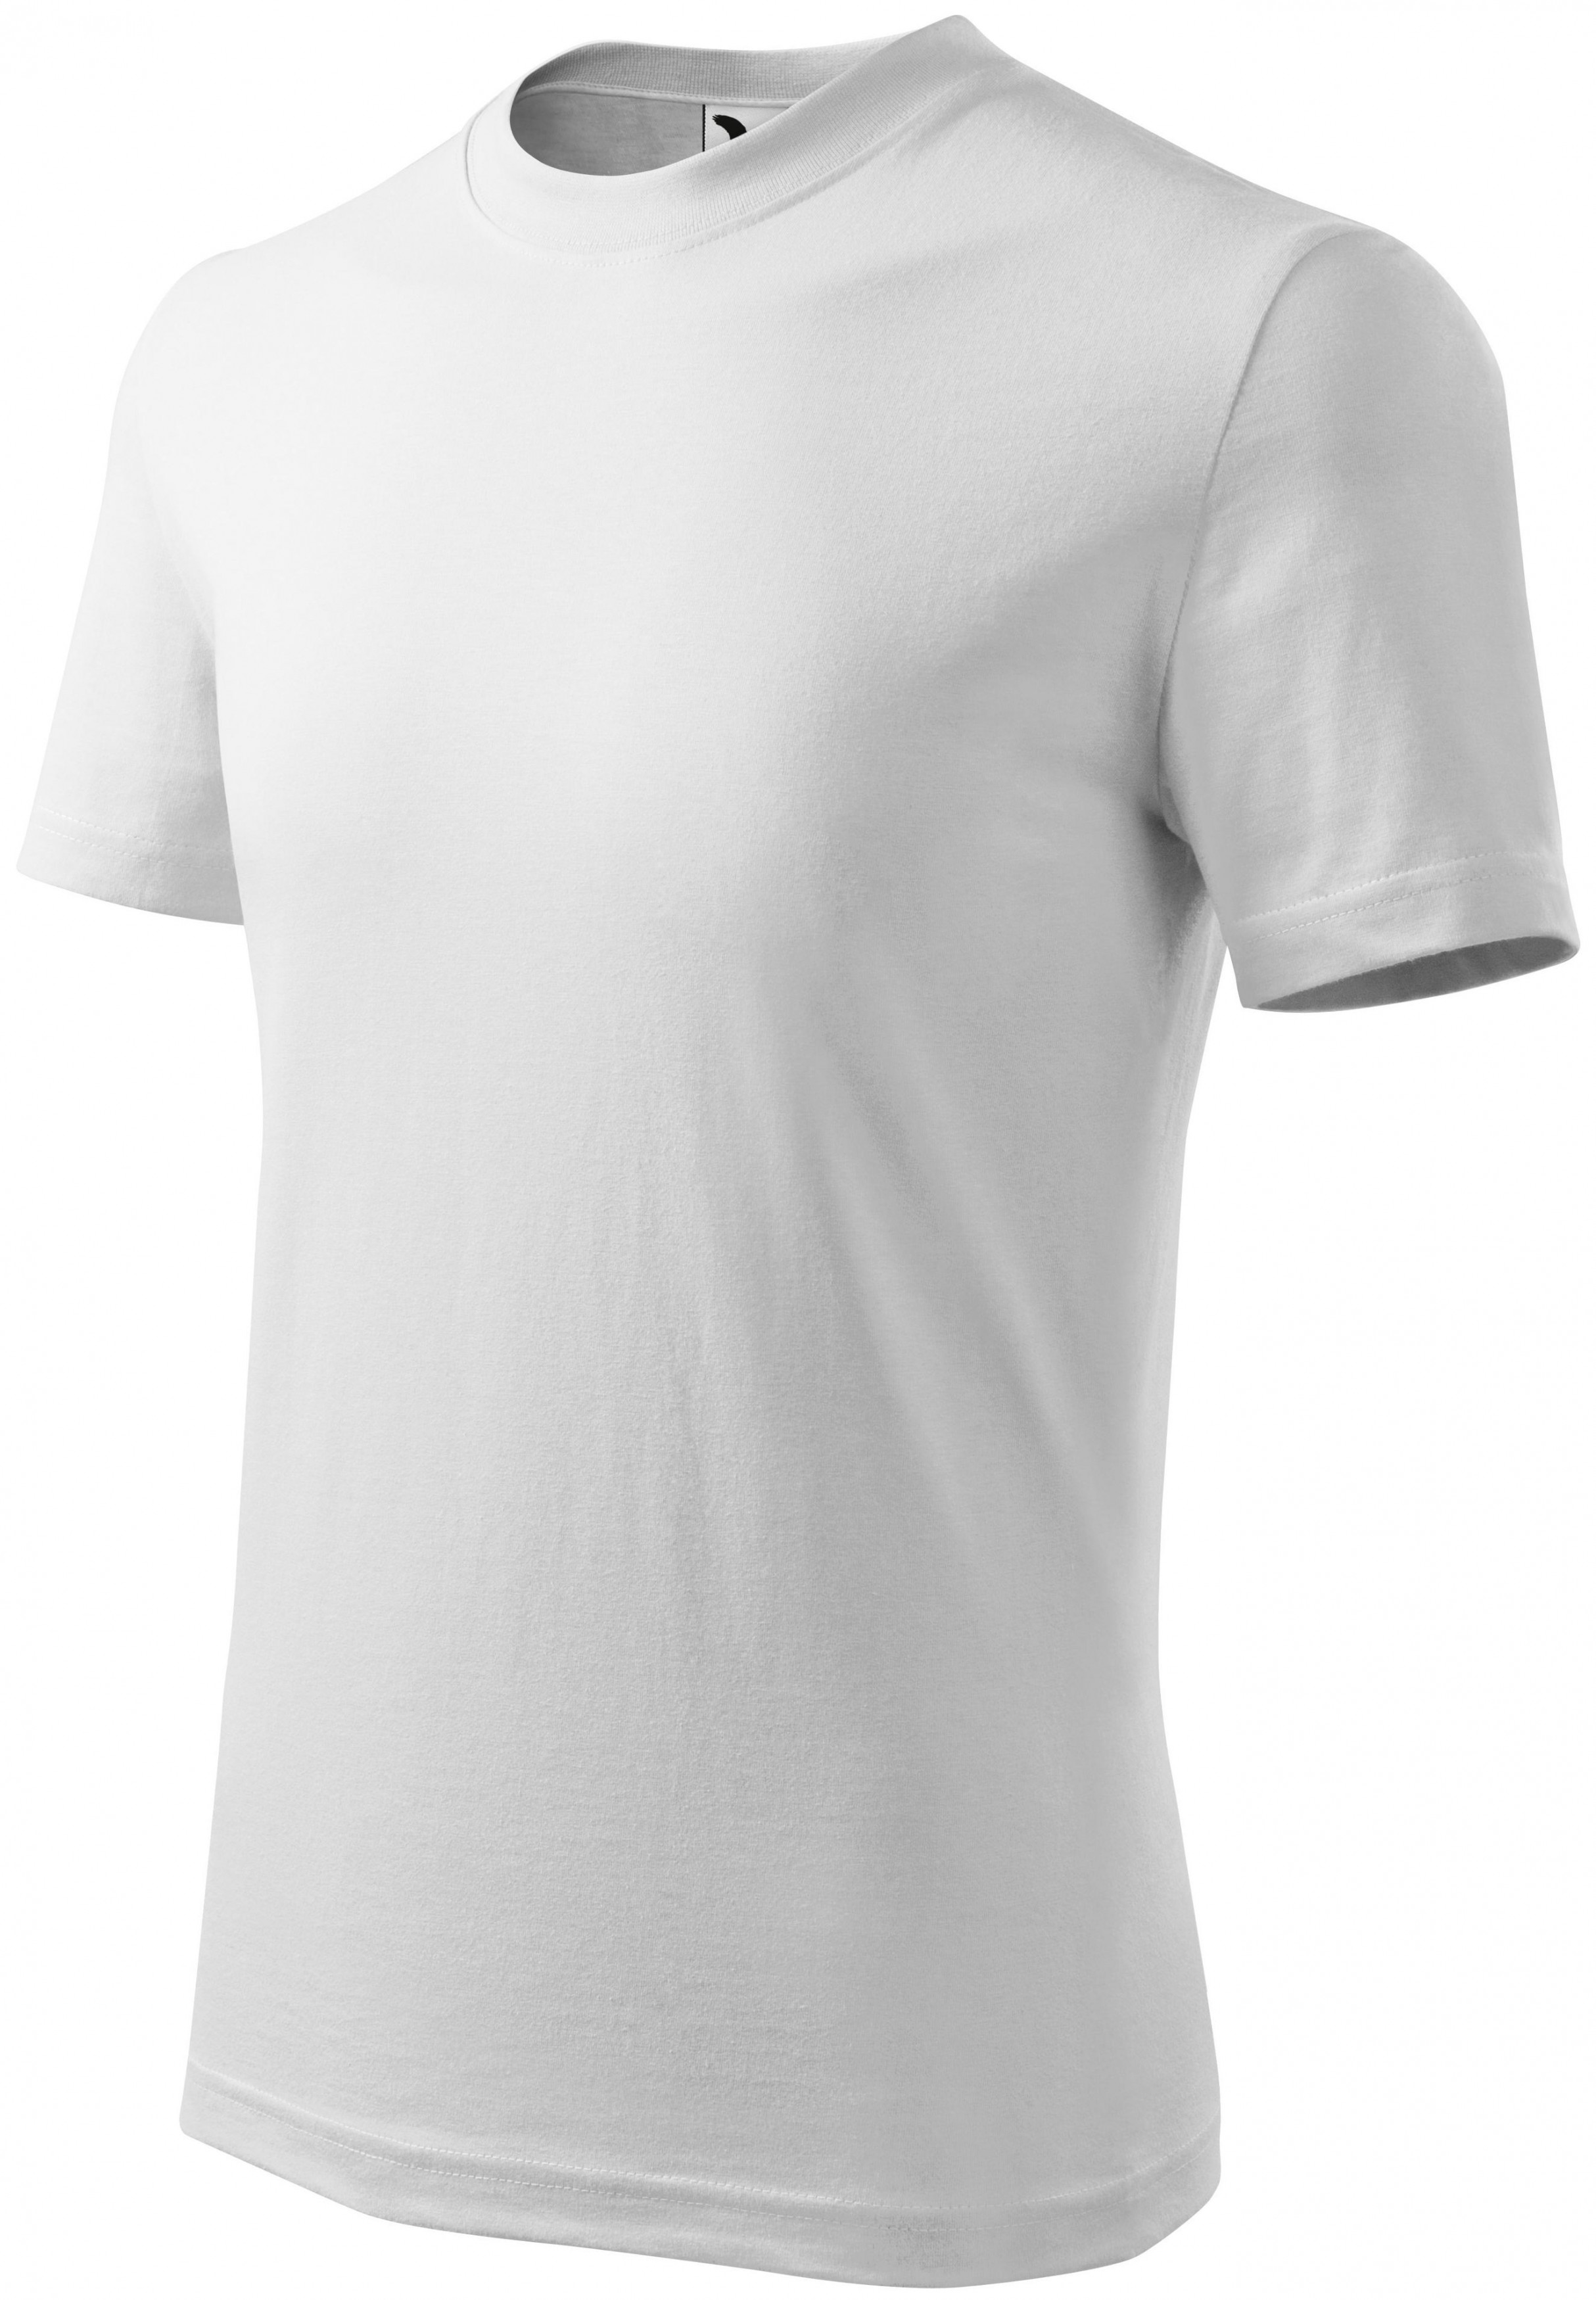 Detské tričko klasické, biela, 134cm / 8rokov